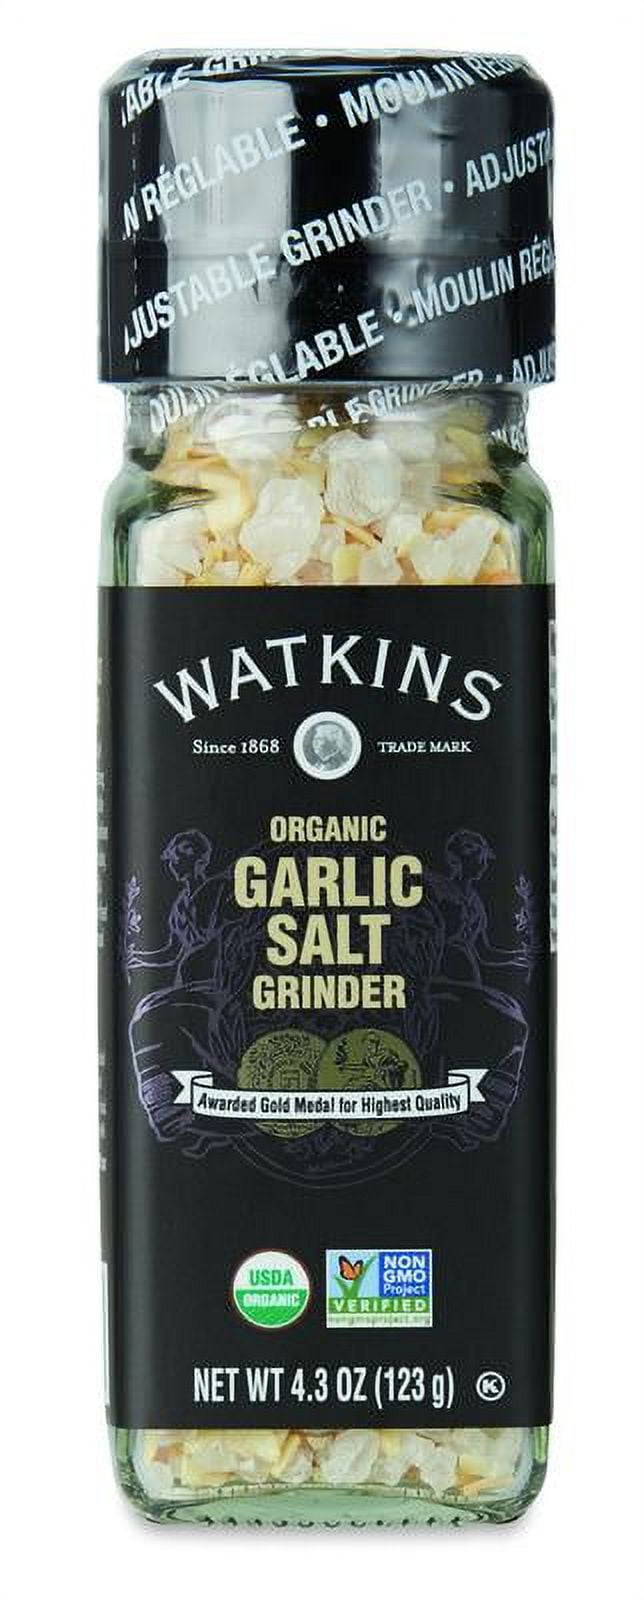 Watkins Garlic & Salt Grinder 4.3 oz